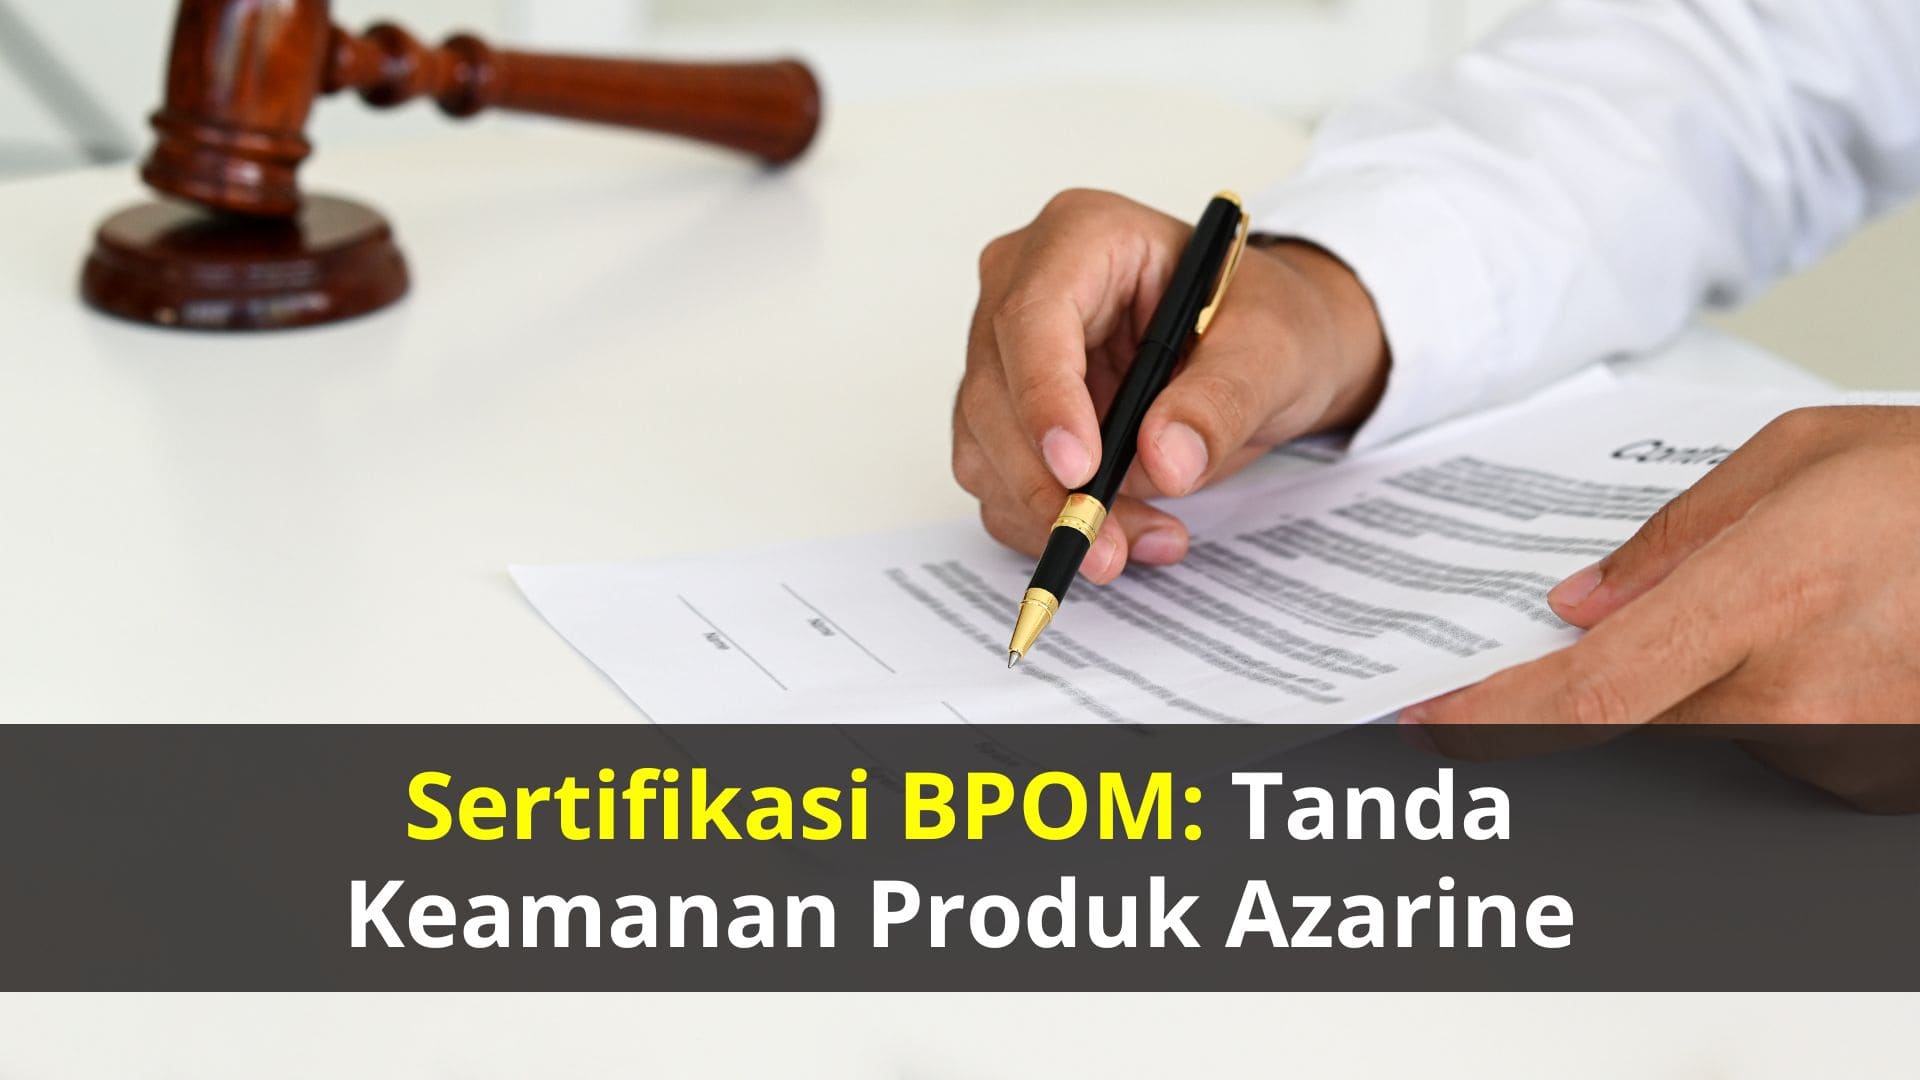 Sertifikasi BPOM: Tanda Keamanan Produk Azarine